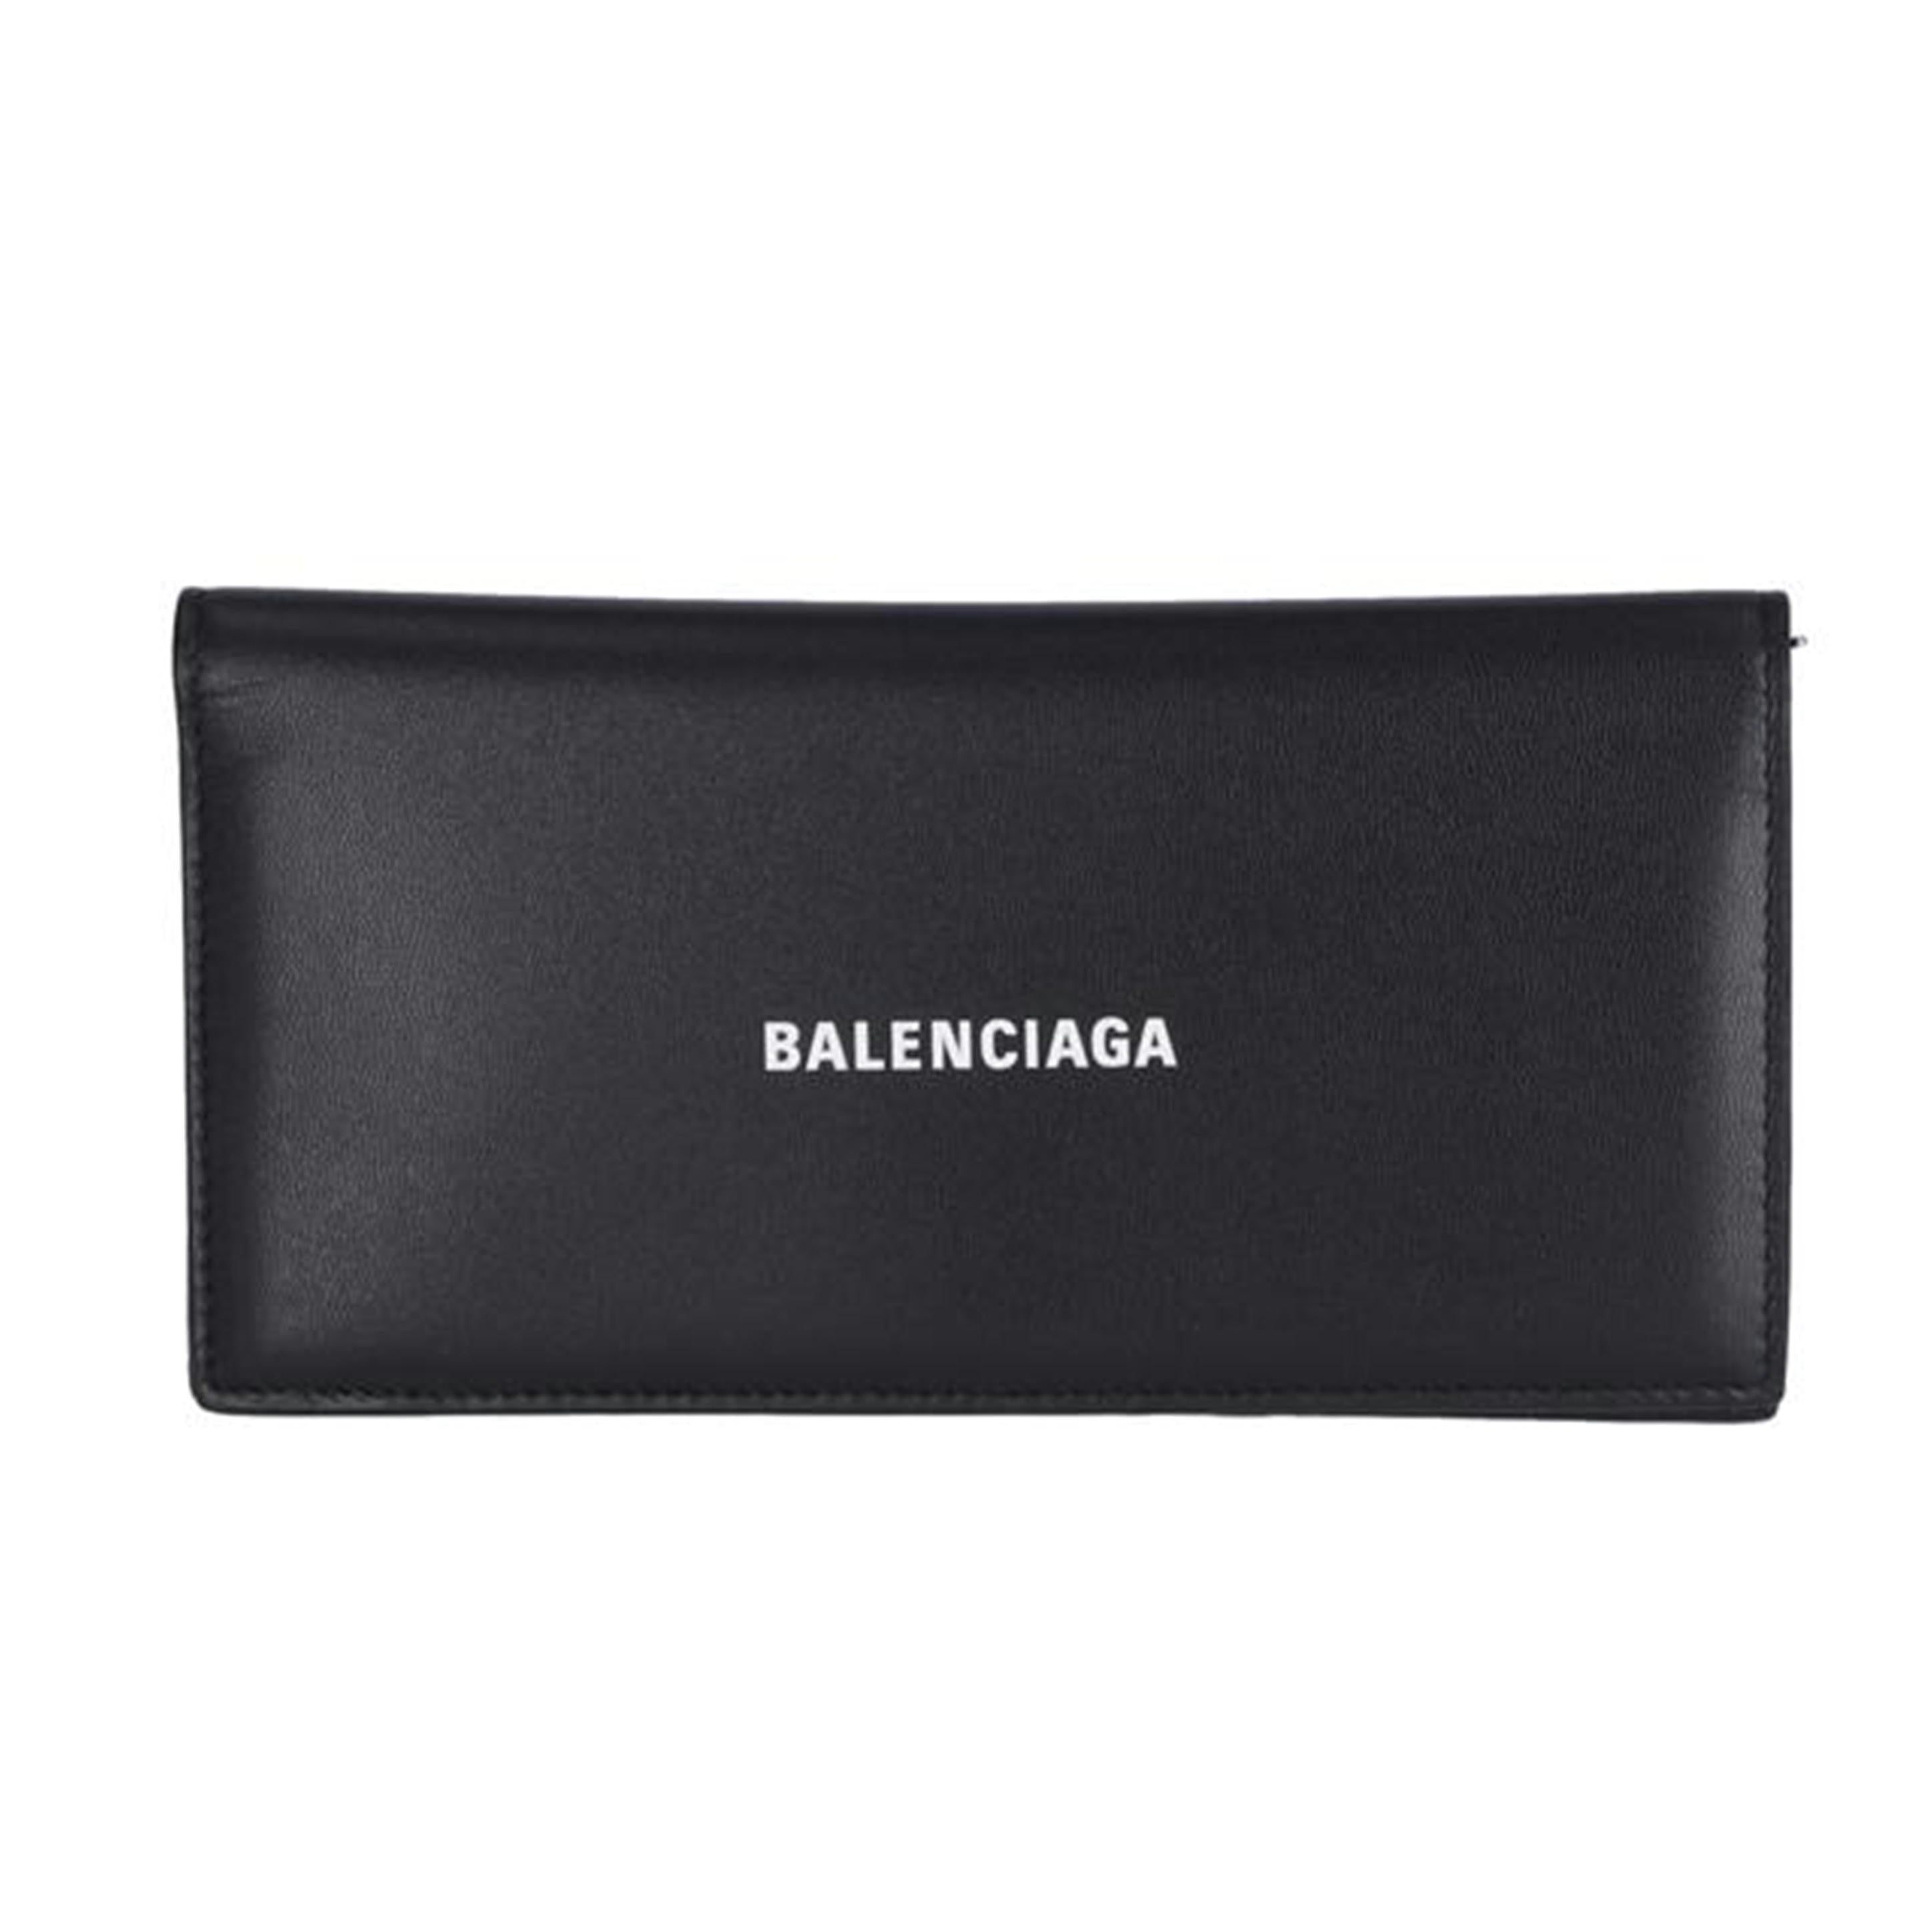 バレンシアガ メンズ財布 - 小物